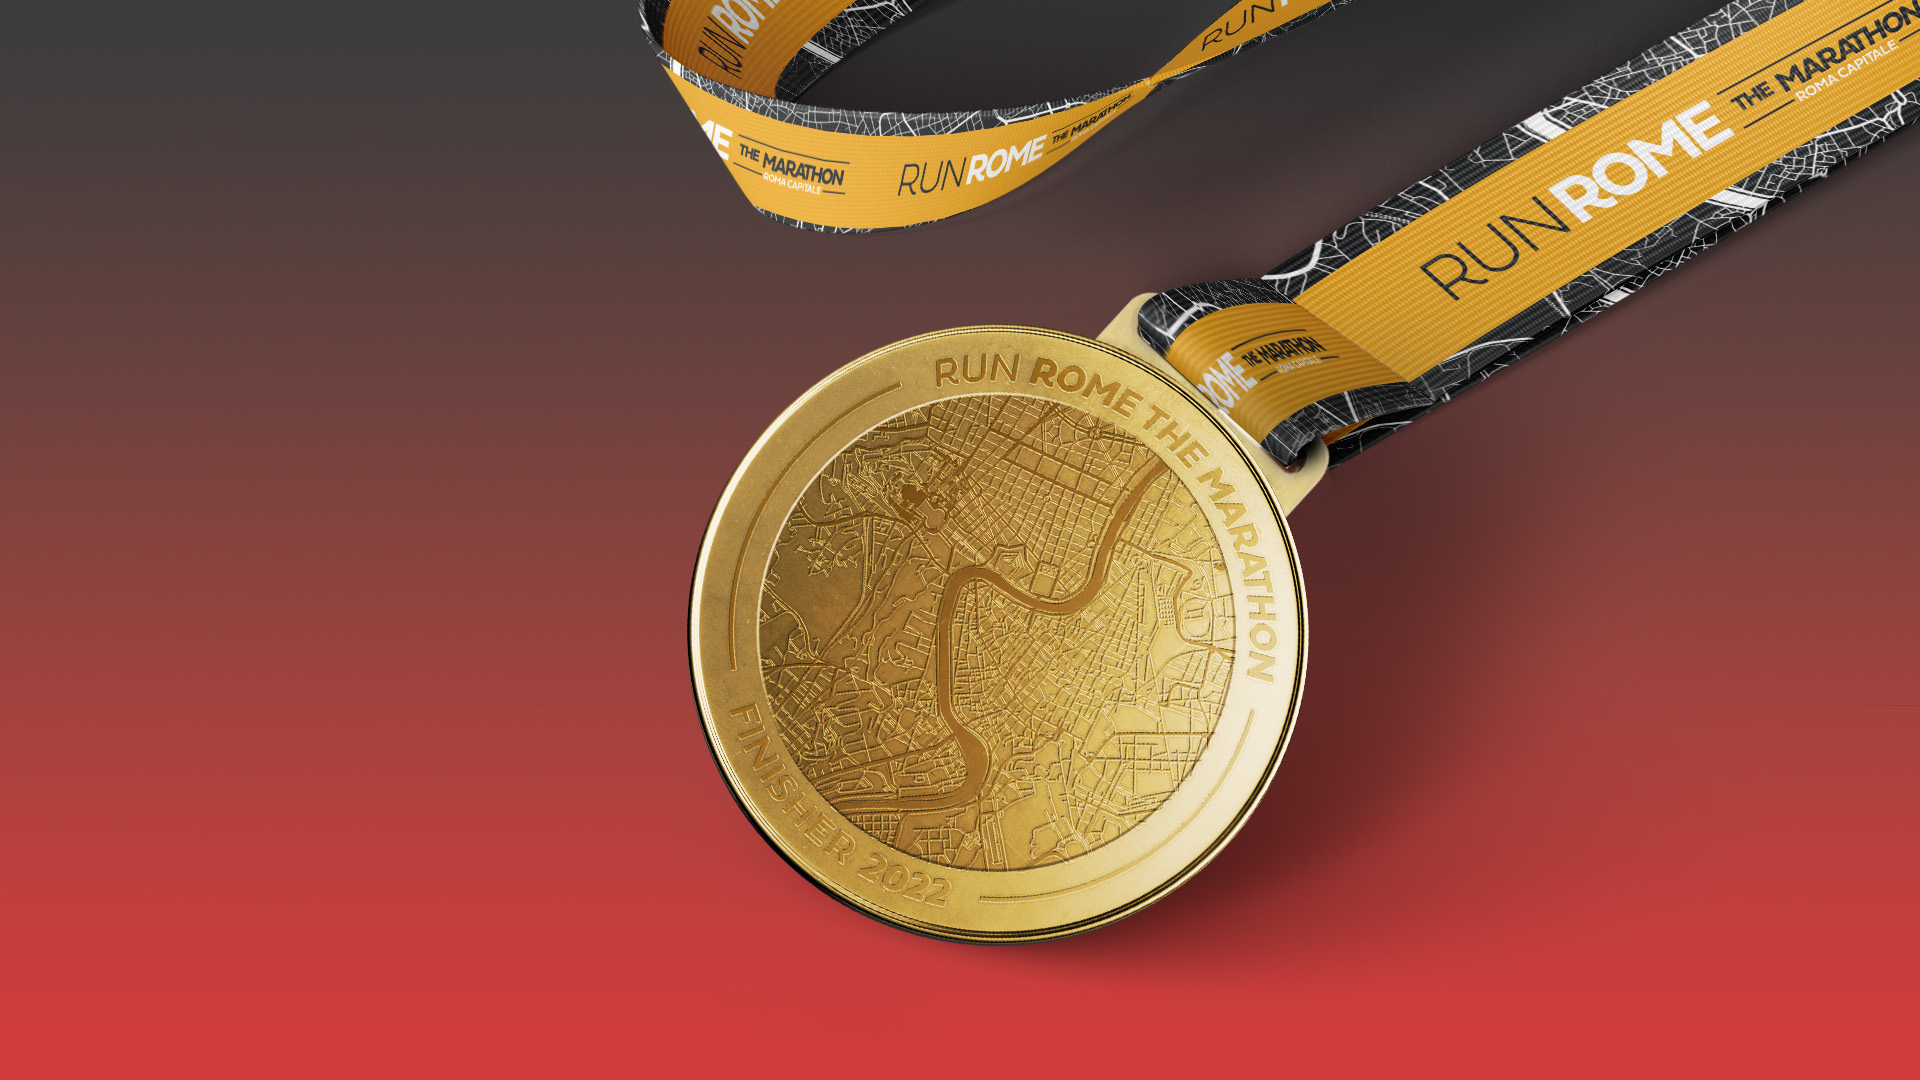 Le tre medaglie dell’Acea Run Rome The Marathon